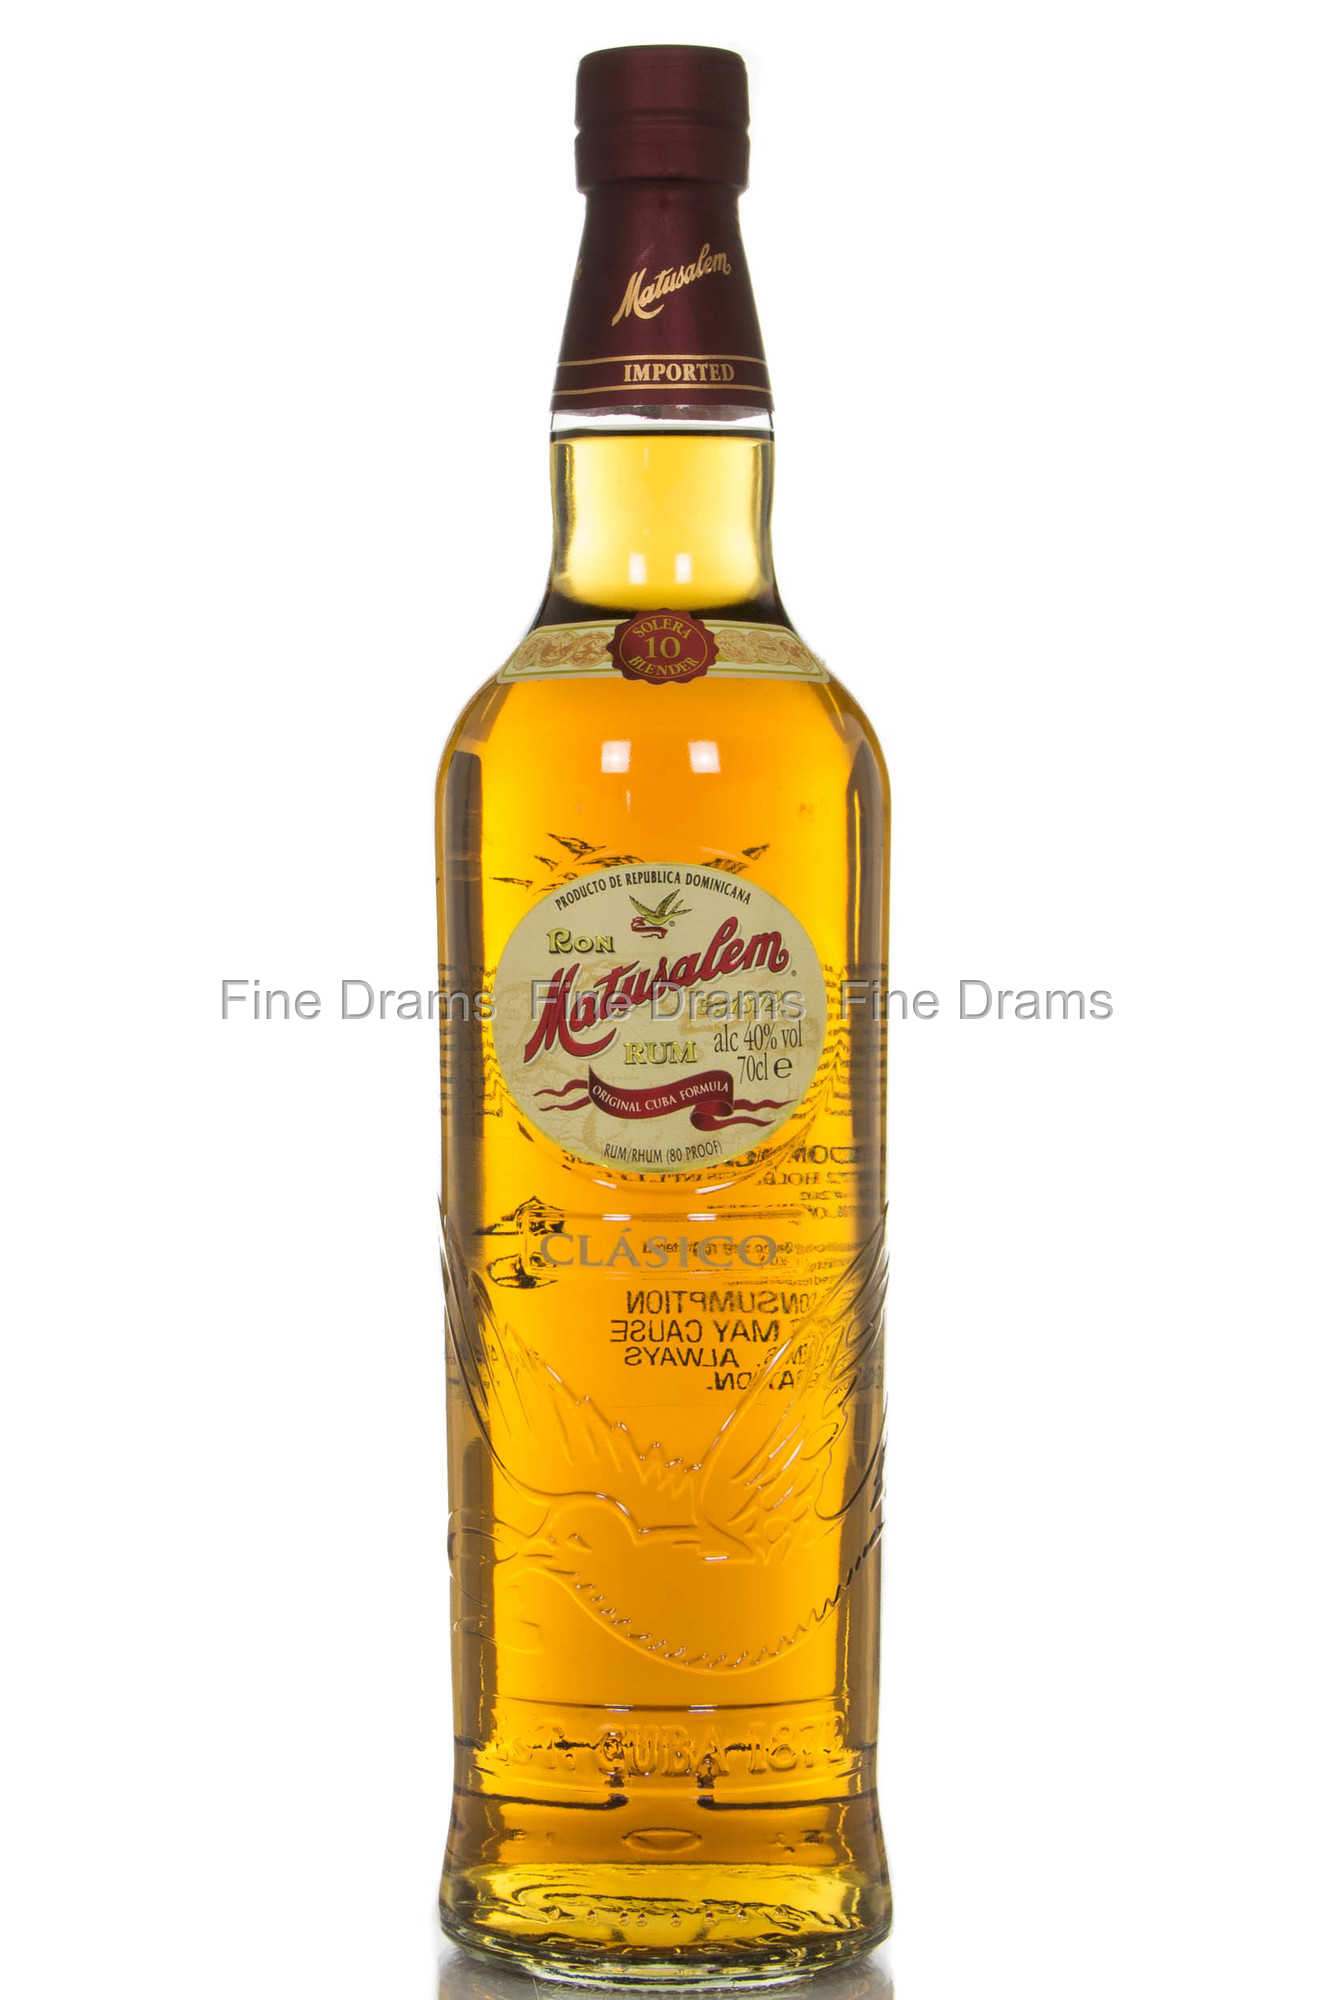 Matusalem Gran Reserva 23 Year Aged Rum Dominican Republic Spirits Review